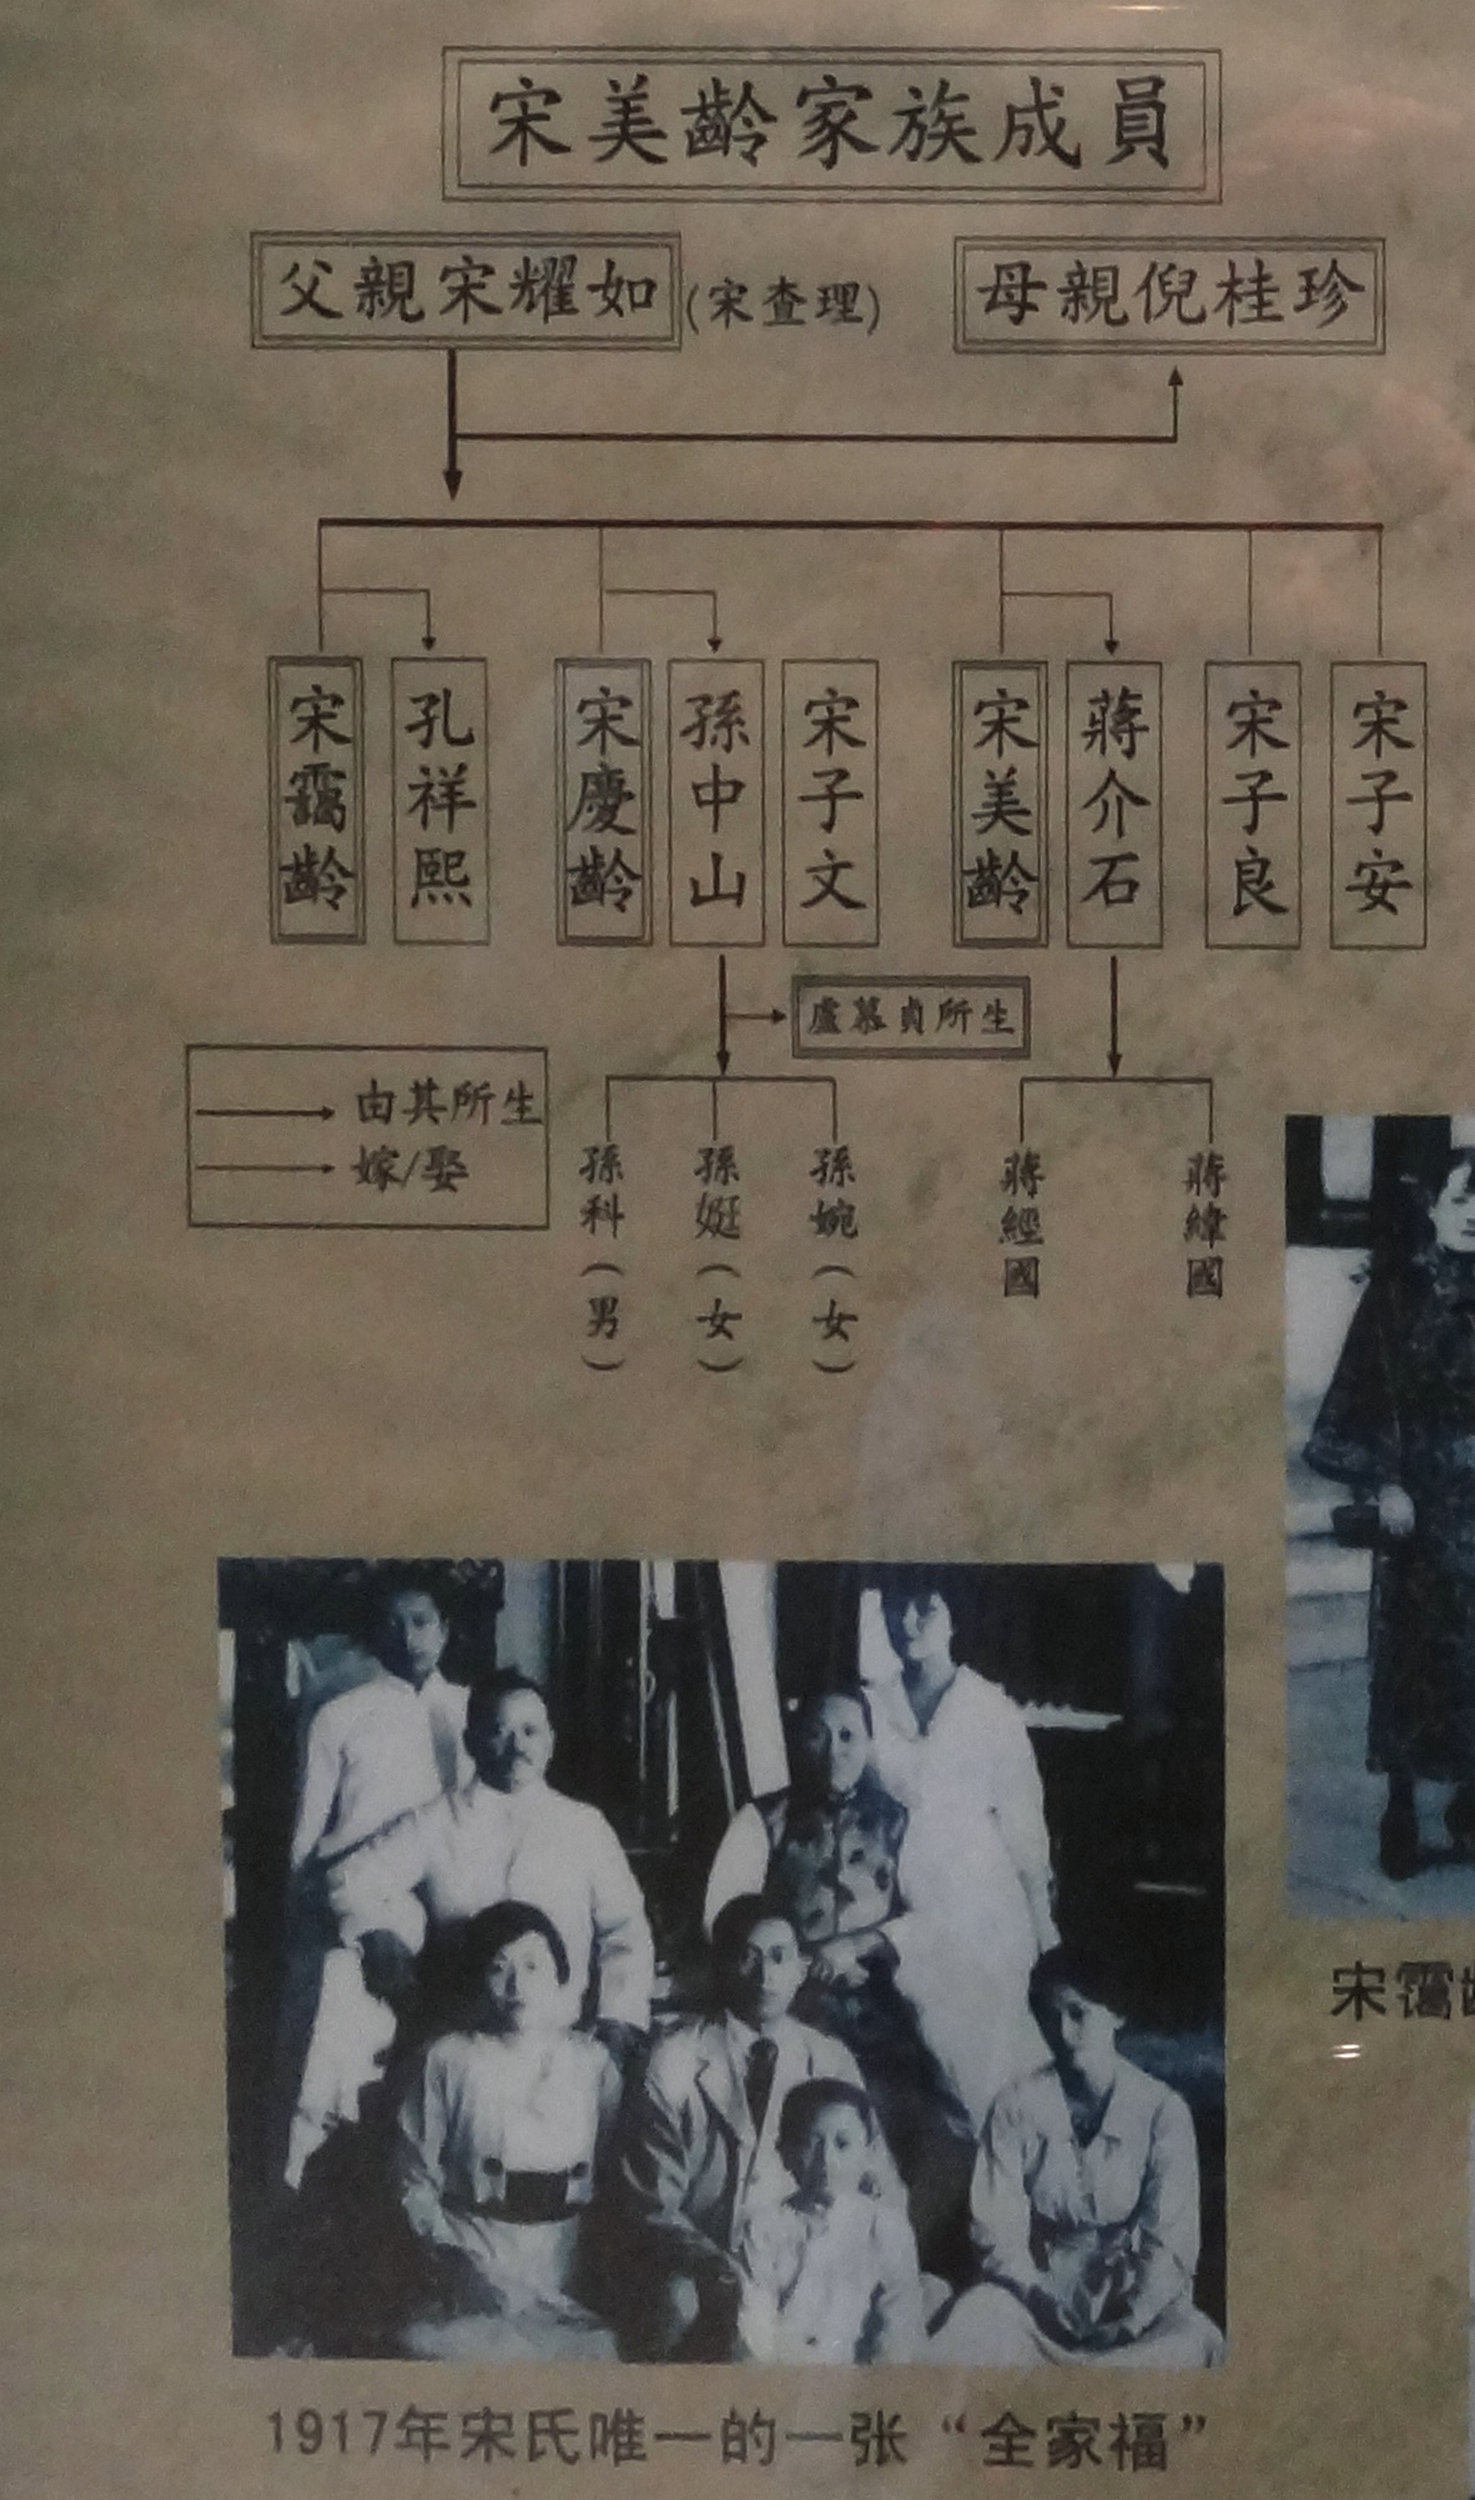 当看到这幅关于宋氏家族成员照片和裙带表,对蒋介石与宋美龄 的婚姻